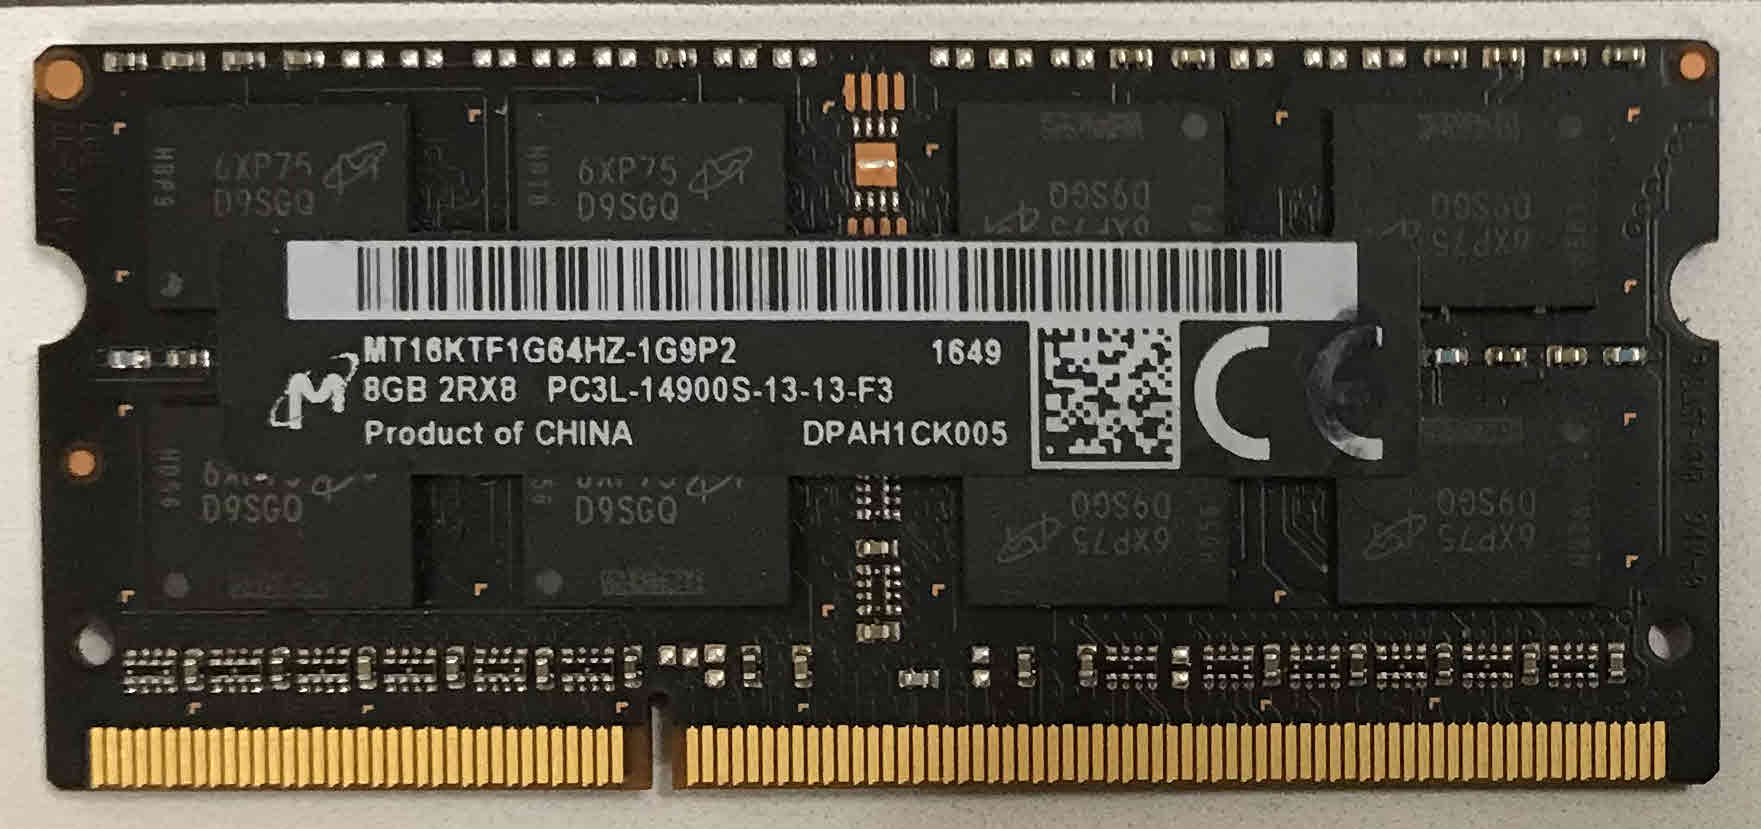 8GB 2Rx8 PC3L-14900S-13-10-F3 Micron